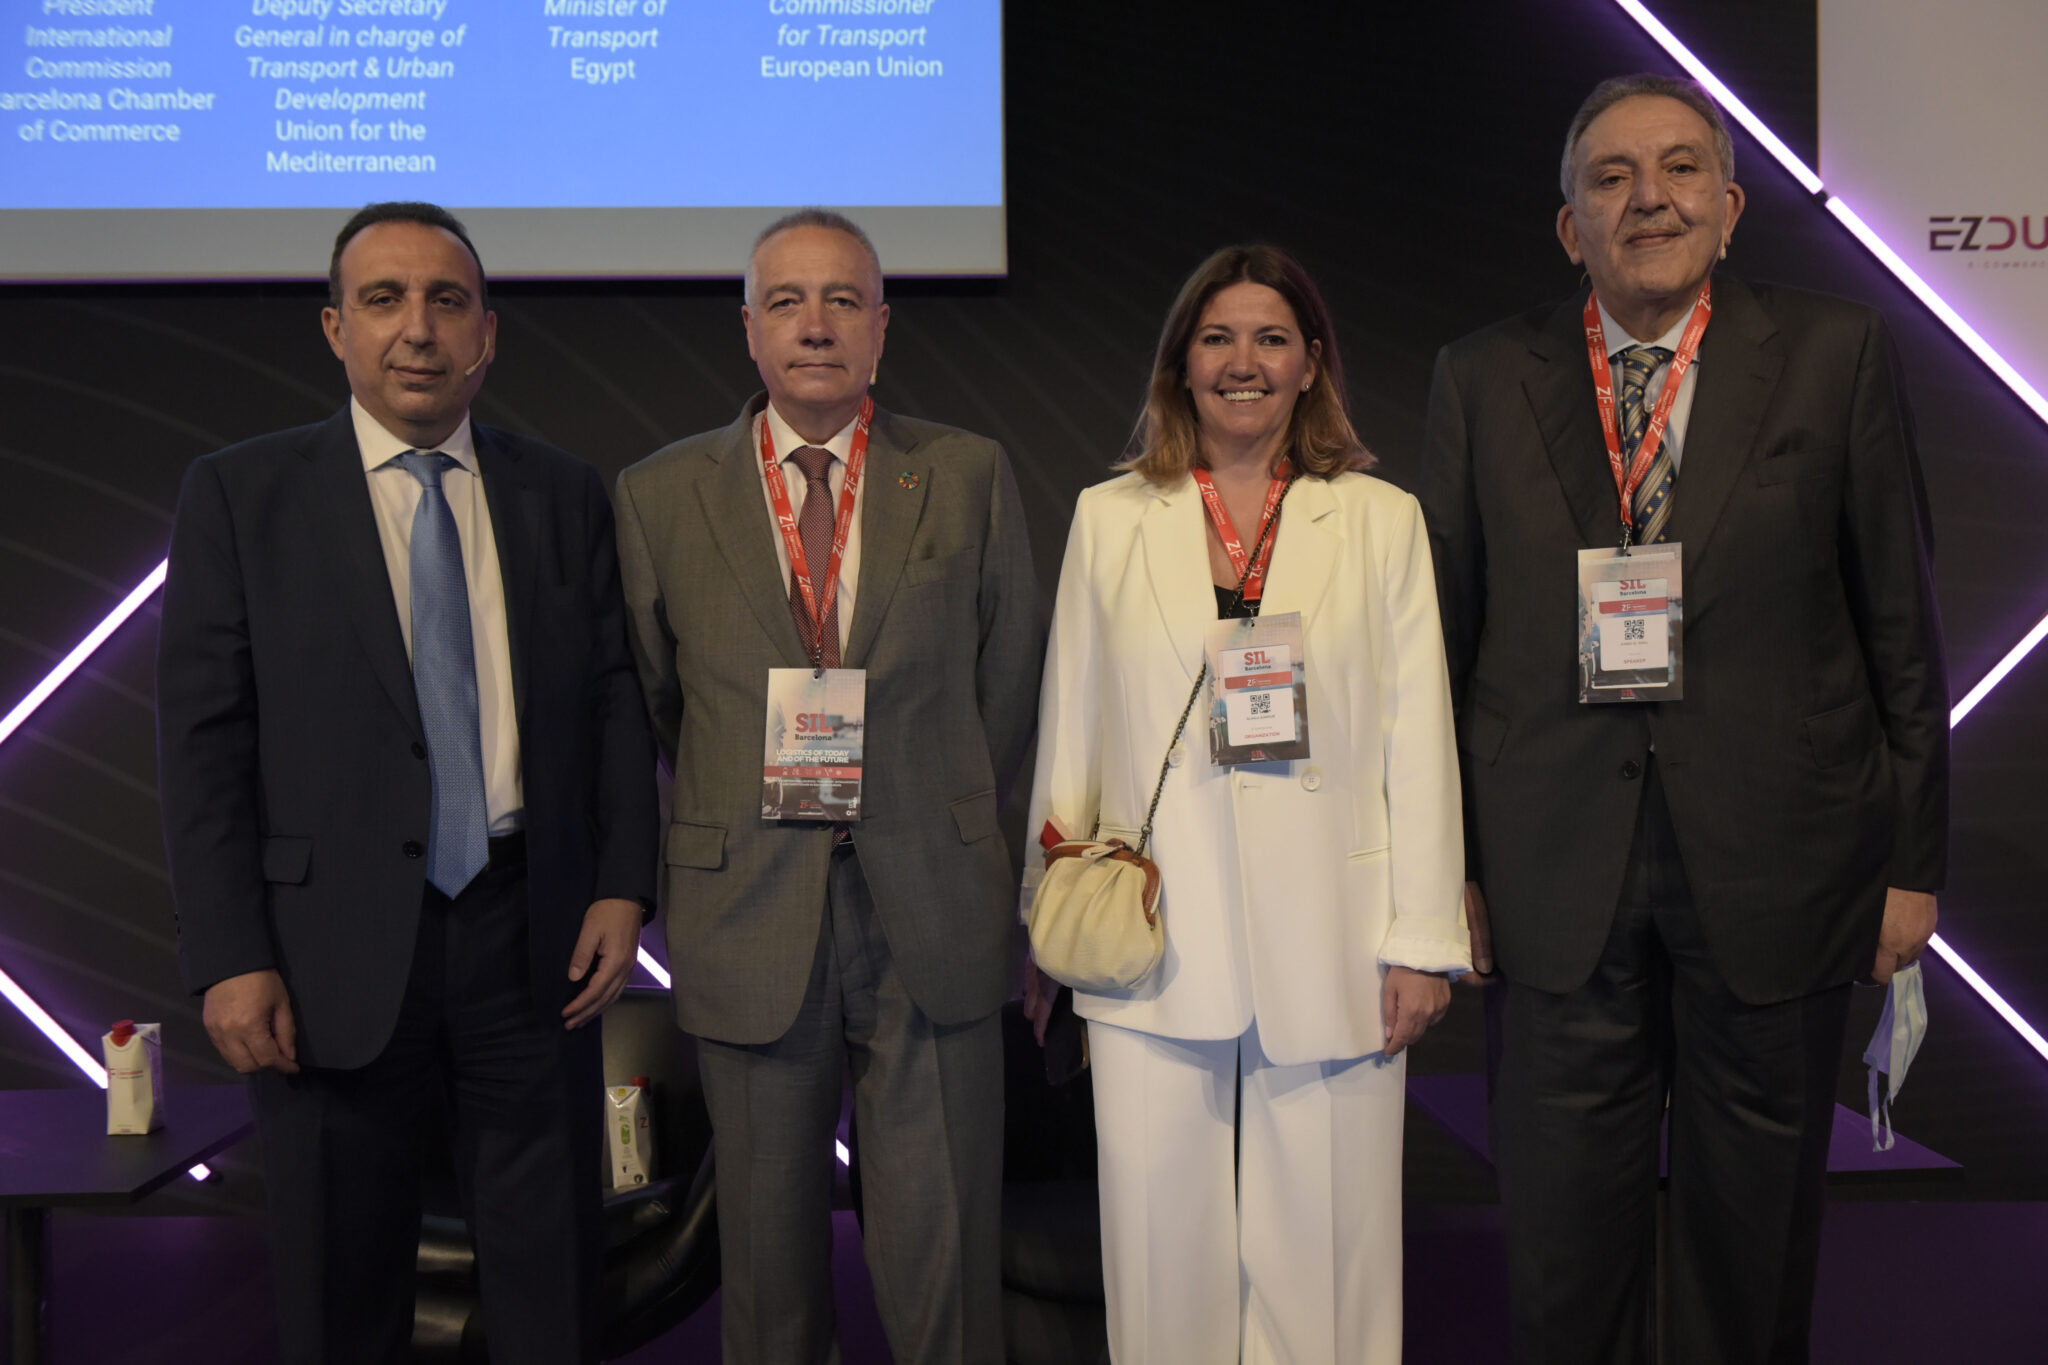 El 19º MedaLogistics Week pone foco en el futuro de la logística mediterránea en un nuevo orden económico global y su ventaja como hub entre continentes y potencias comerciales globales